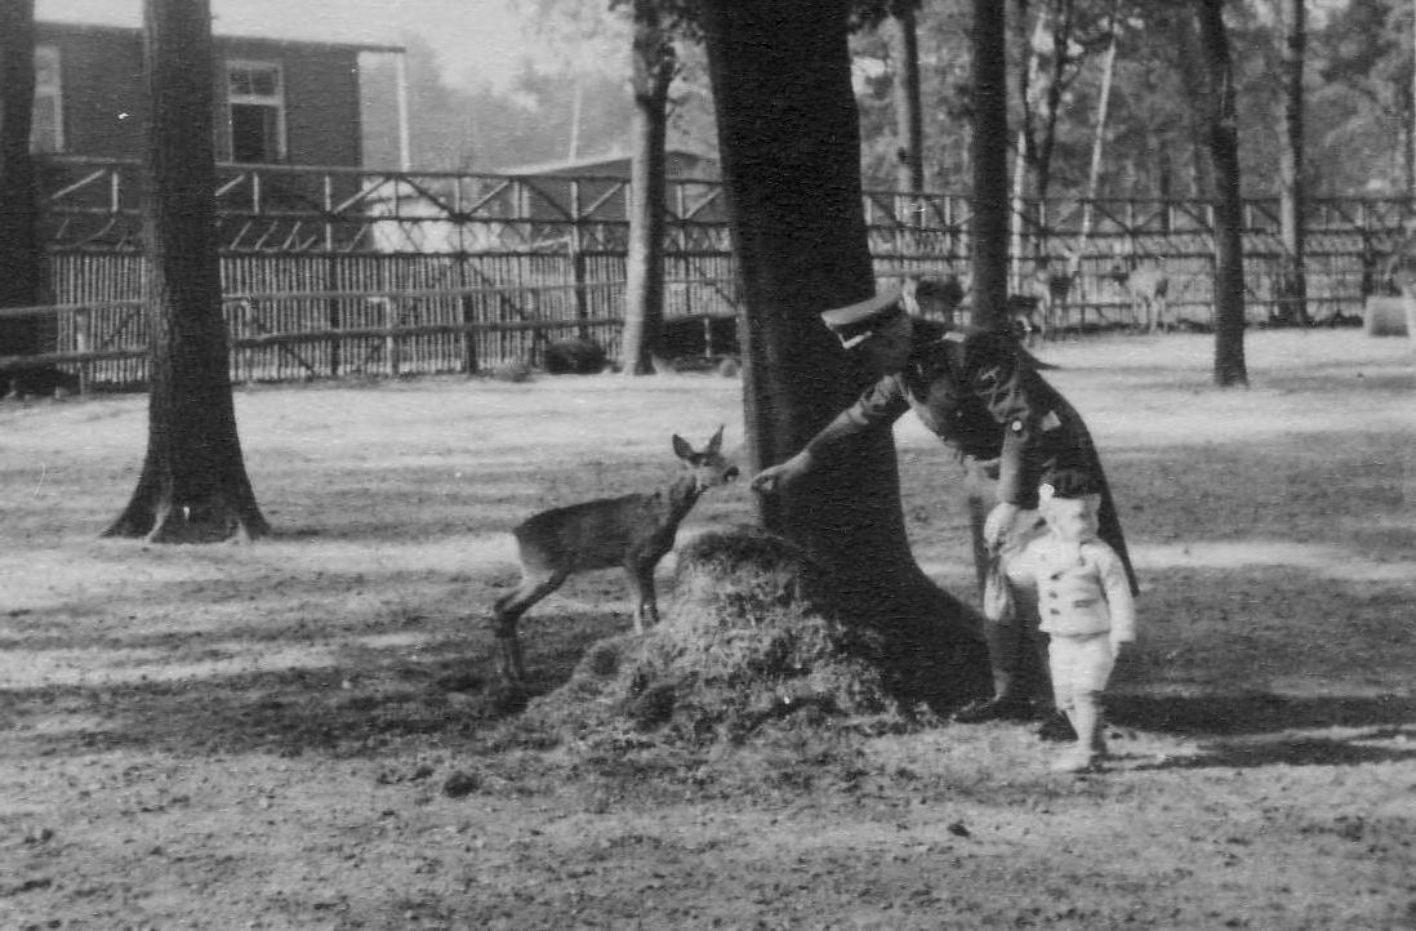 Der Lagerkommandant Karl Koch füttert aus ein Rehkitz aus der Hand, welches augenscheinlich ein weitläufiges Gehege mit Bäumen zur Verfügung hat. An der anderen Hand sein Sohn, ein kleines Kind. Das Kind schaut in die andere Richtung, aus dem Bild heraus. 